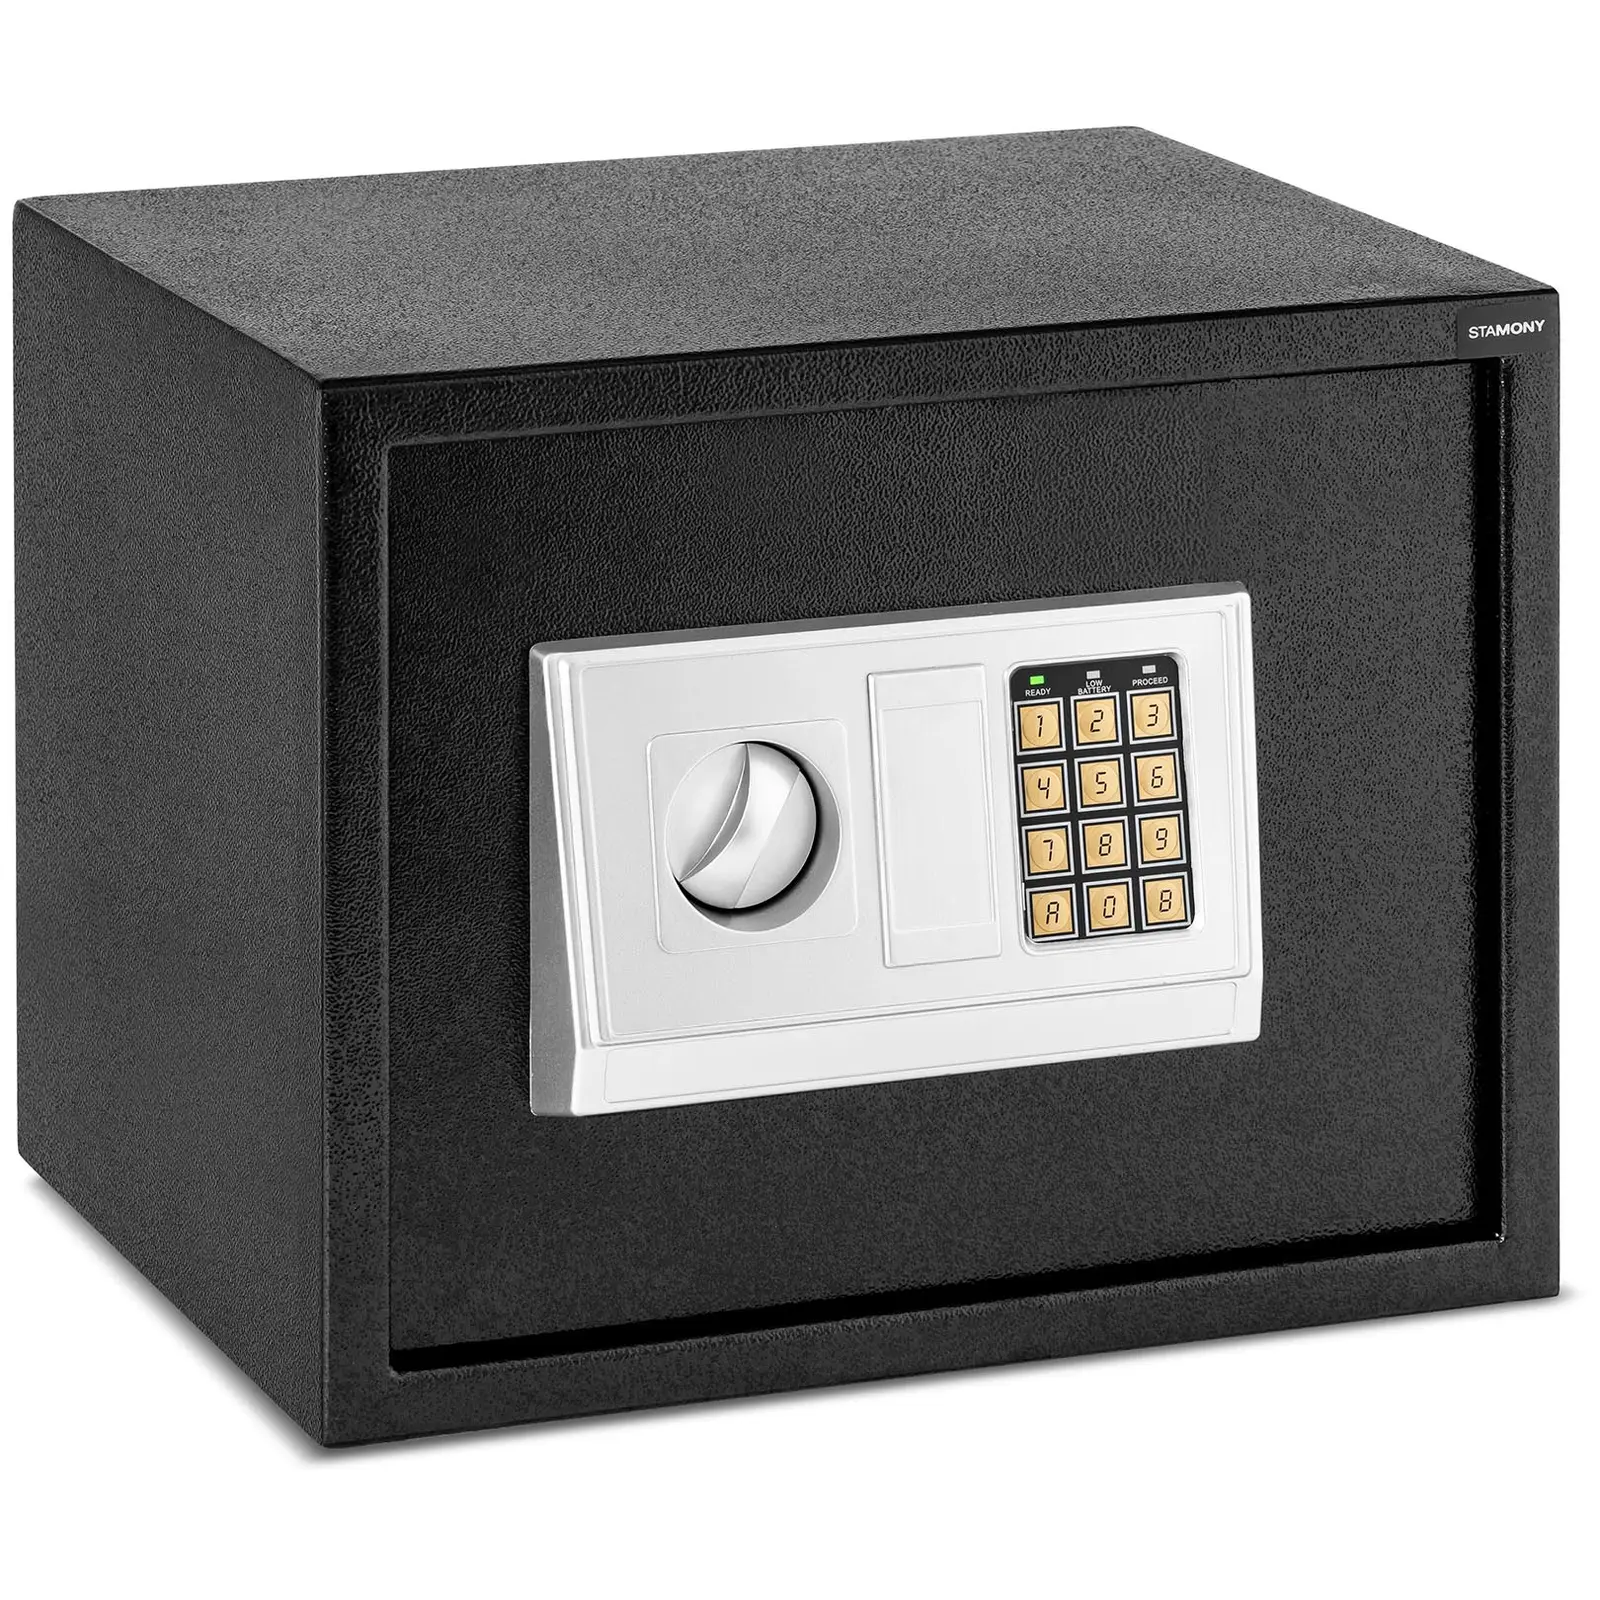 B-varer Elektronisk safe - 38 x 30 x 30 cm